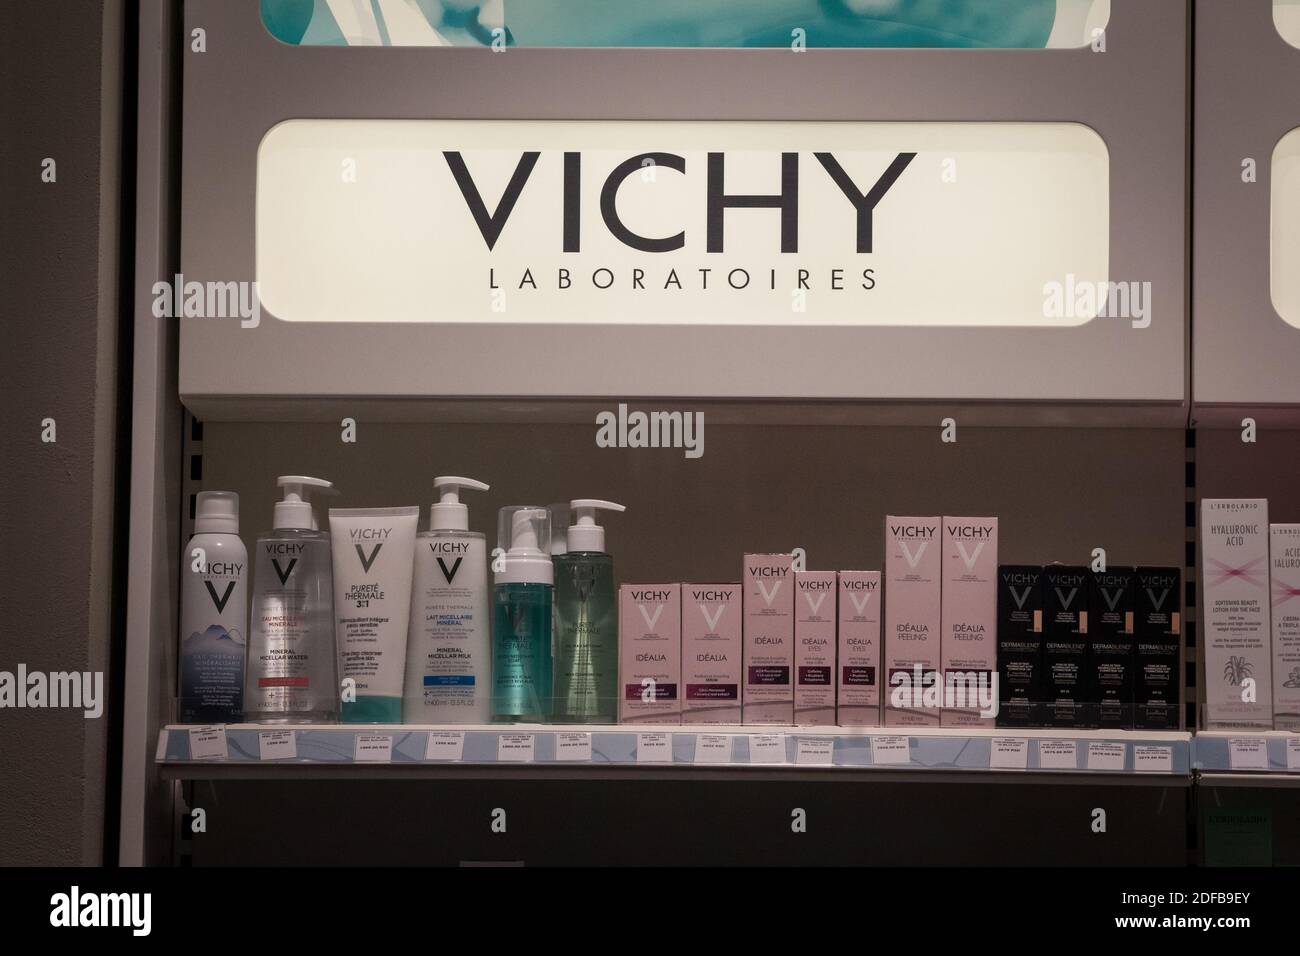 BELGRADE, SERBIE - 31 OCTOBRE 2020 : logo Vichy laboratoires sur une étagère de produits de la marque. Vichy est un laboratoire pharmaceutique français de cosmétiques Banque D'Images